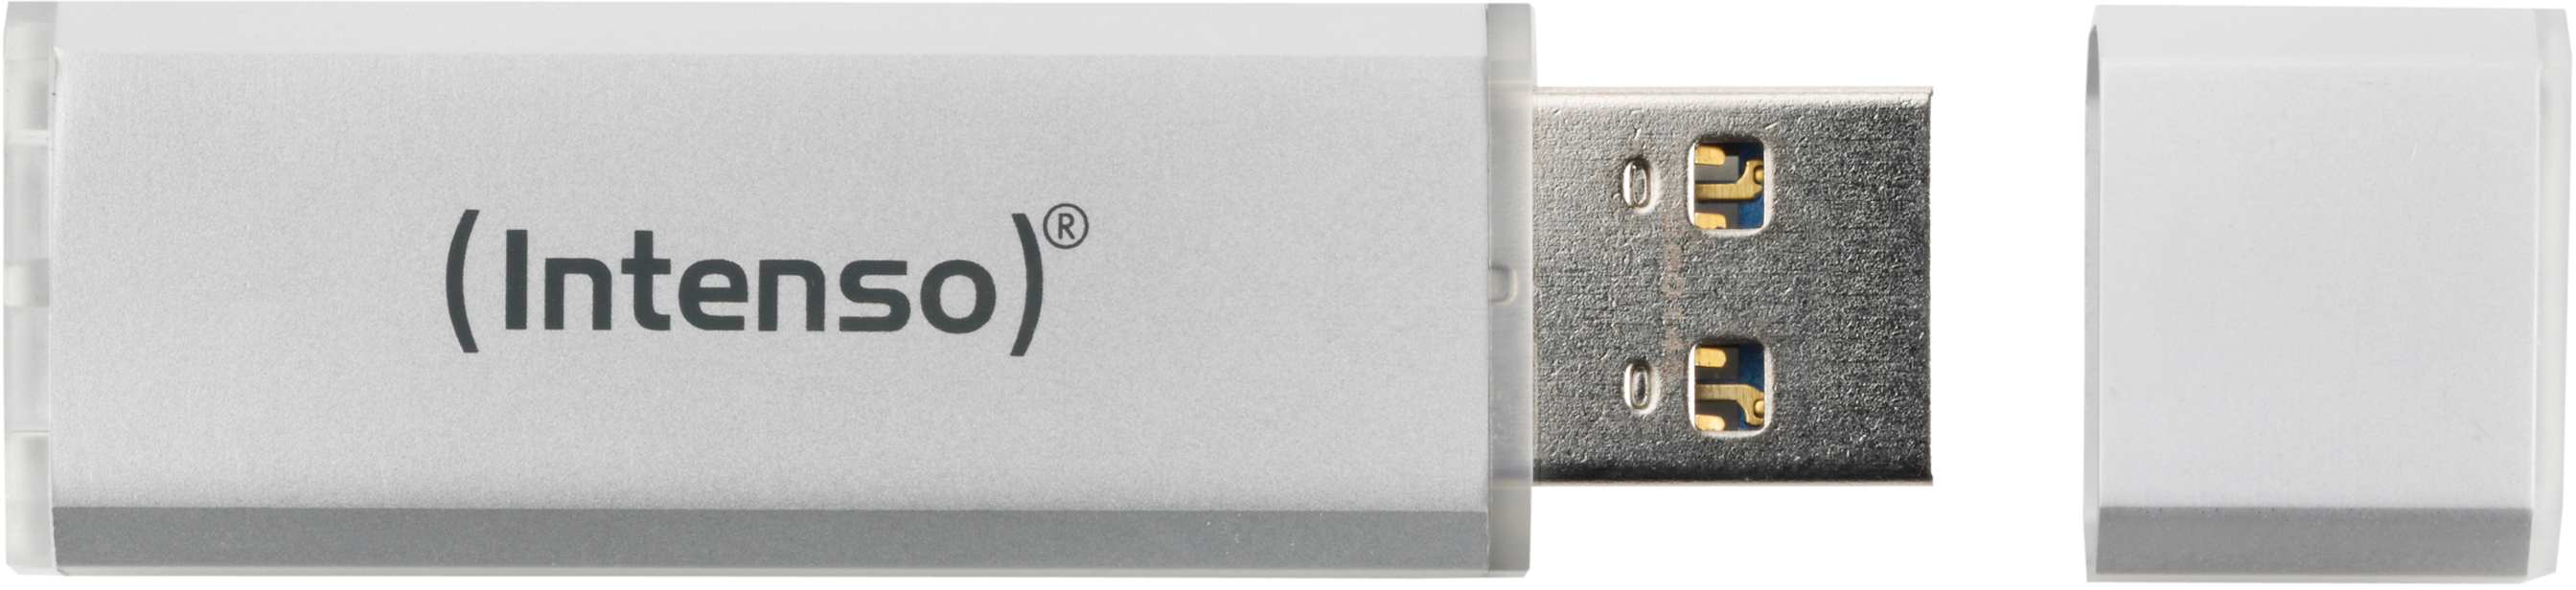 INTENSO USB-Stick Alu Line 16GB 3521472 USB 2.0 silver